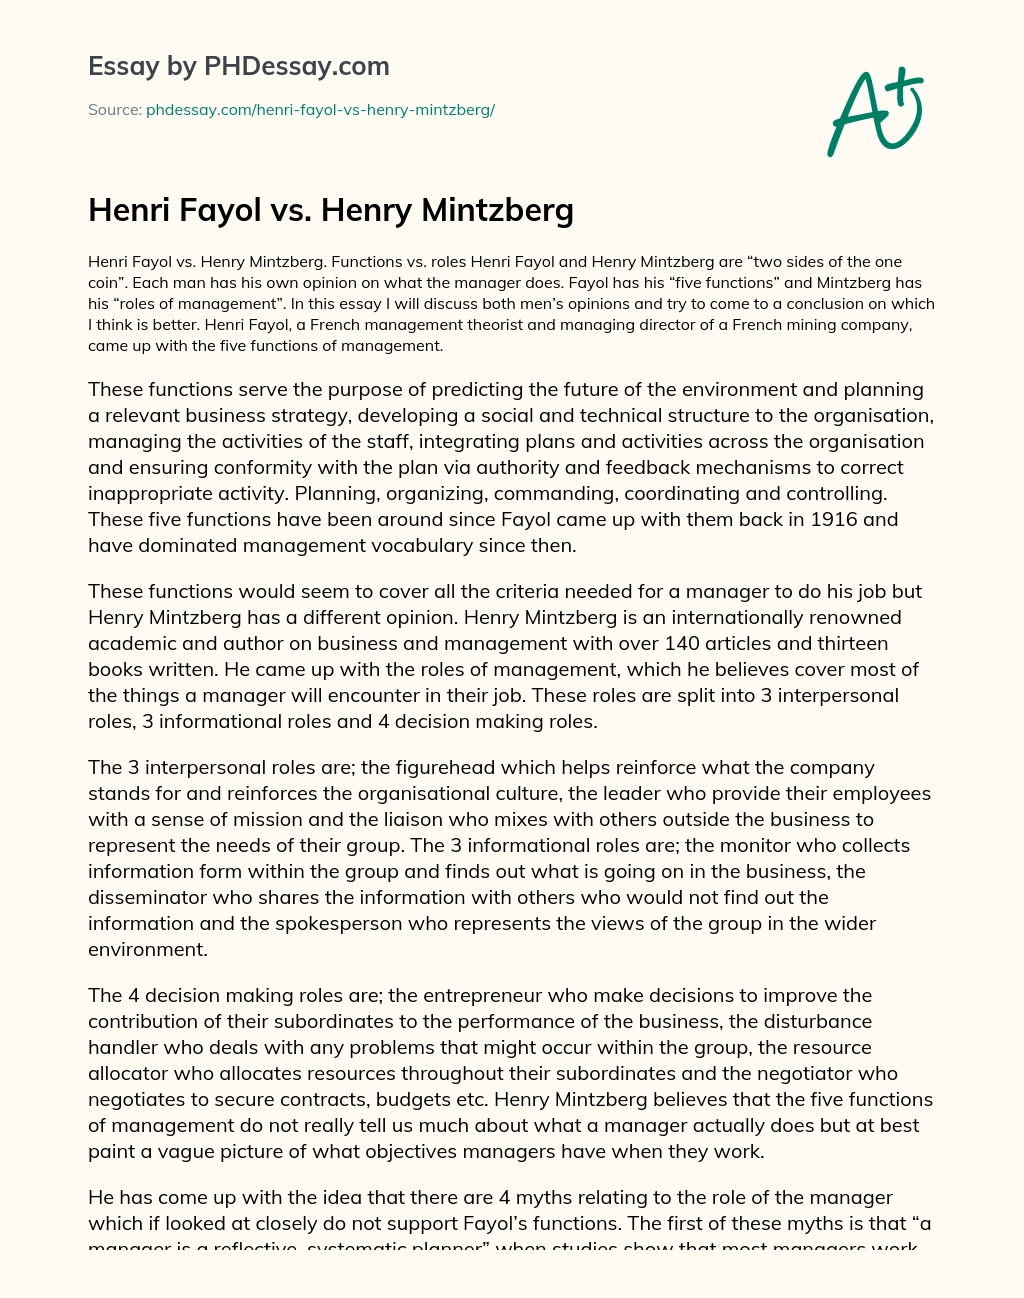 Henri Fayol vs. Henry Mintzberg essay